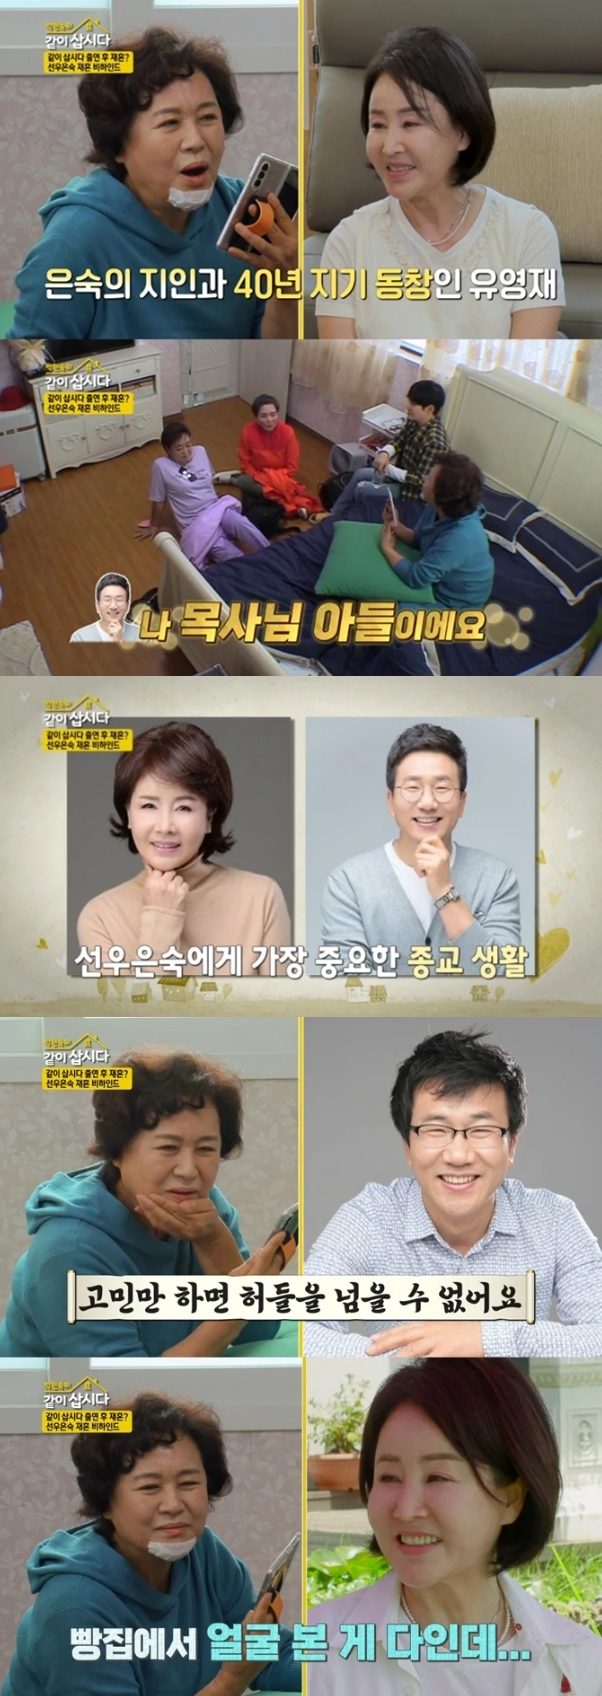 KBS2 ‘박원숙의 같이 삽시다’ 캡처